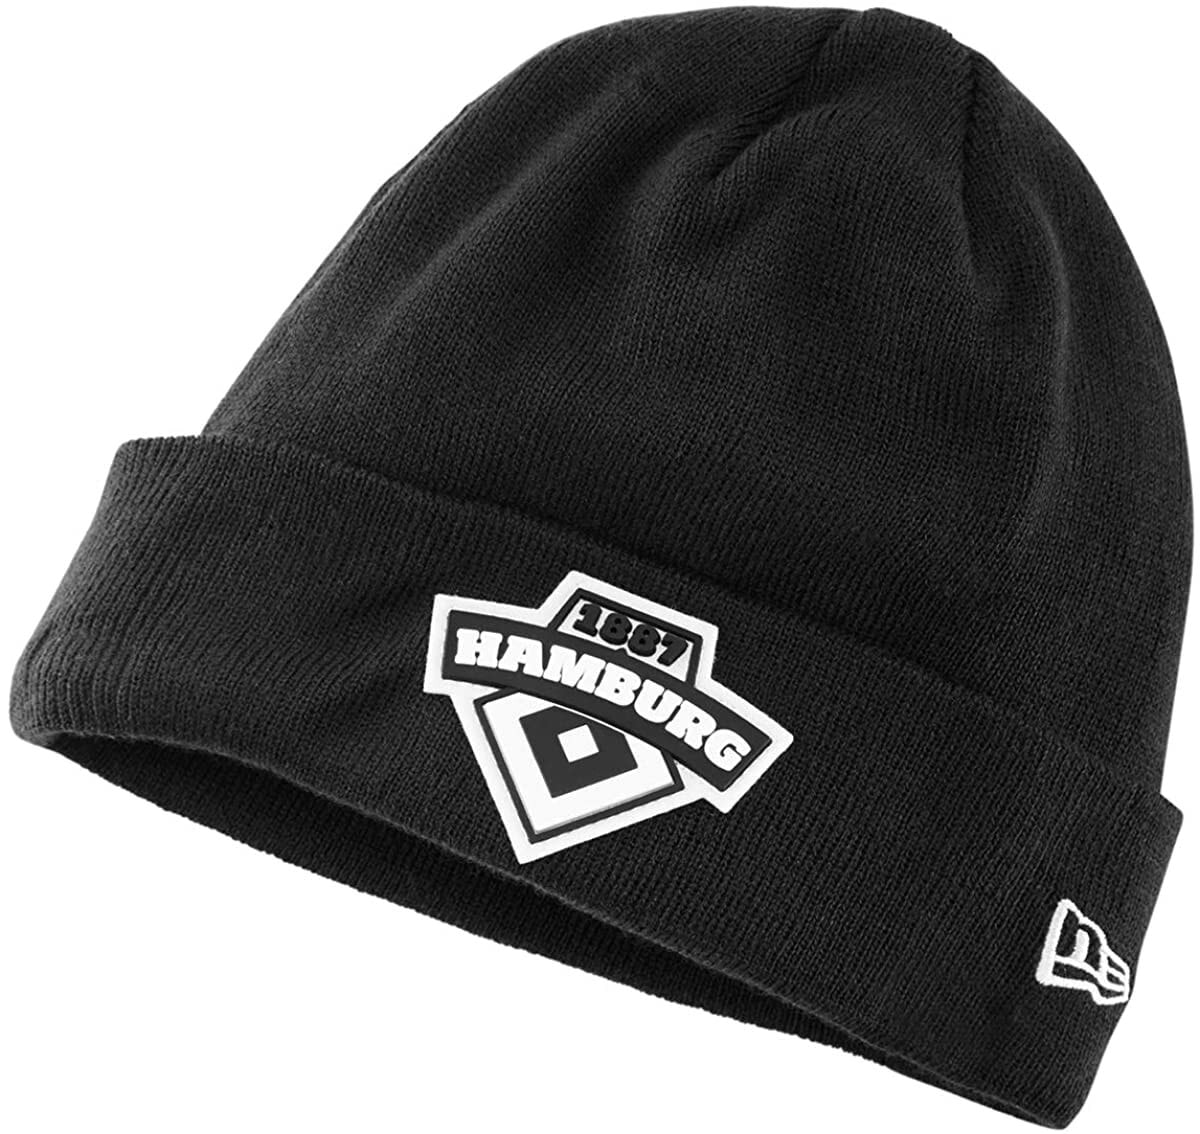 Мужская шапка черная трикотажная New Era HSV Hamburg Sports Club Finn Hat